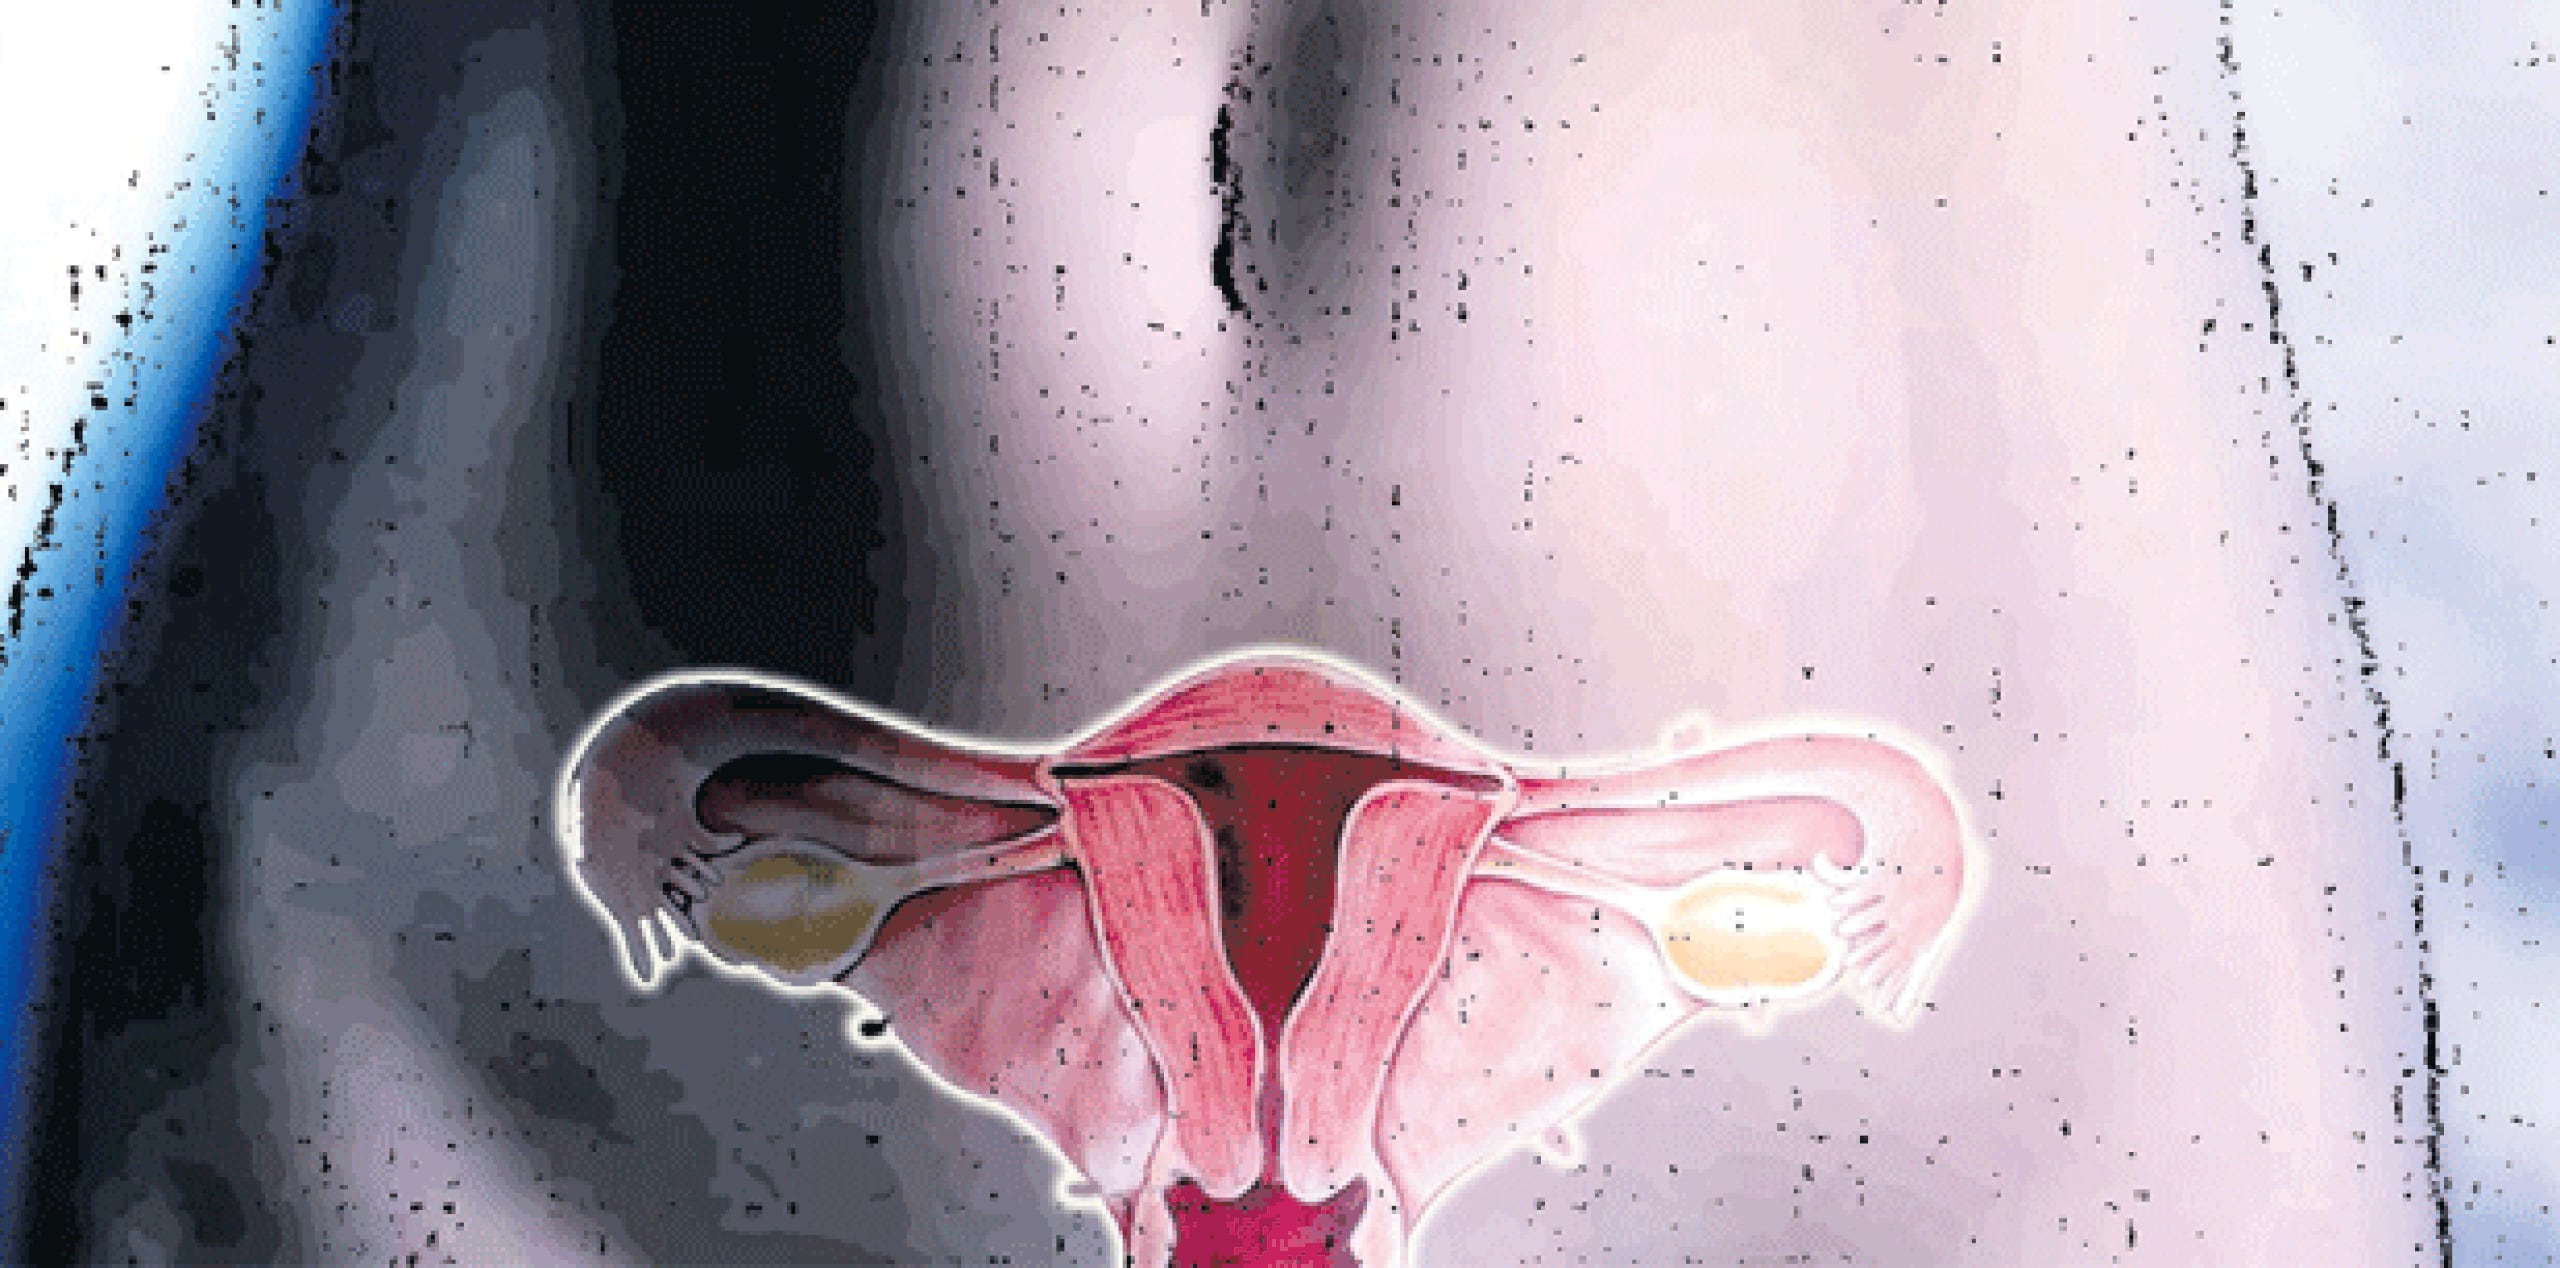 El cáncer de ovario es el noveno en la lista de los que afectan a las mujeres, según estadísticas recopiladas por el Registro Central de Cáncer de Puerto Rico entre 2006 a 2010. El primero es el cáncer de mama, seguido por el de colon y recto y el de tiroides. (Archivo)